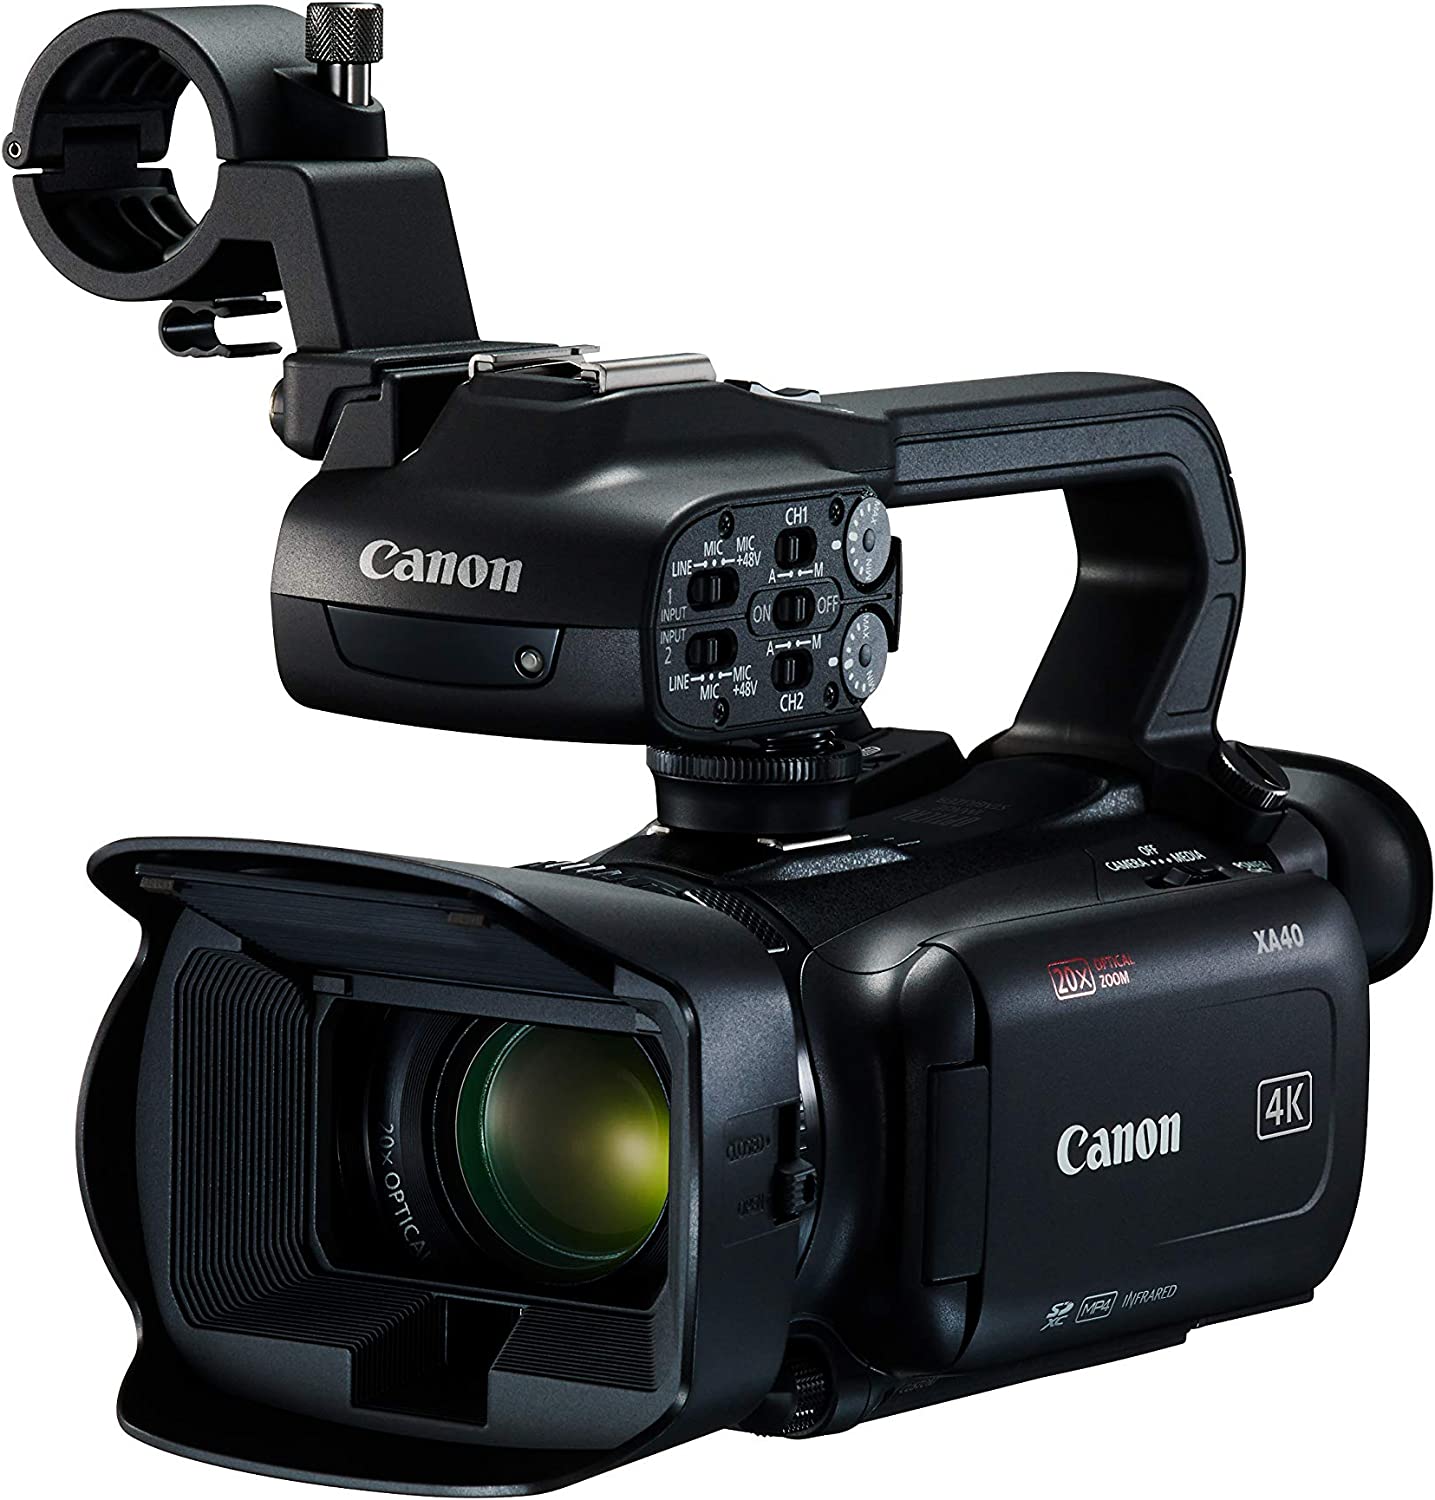 Caméscope Canon XA40 UHD 4K